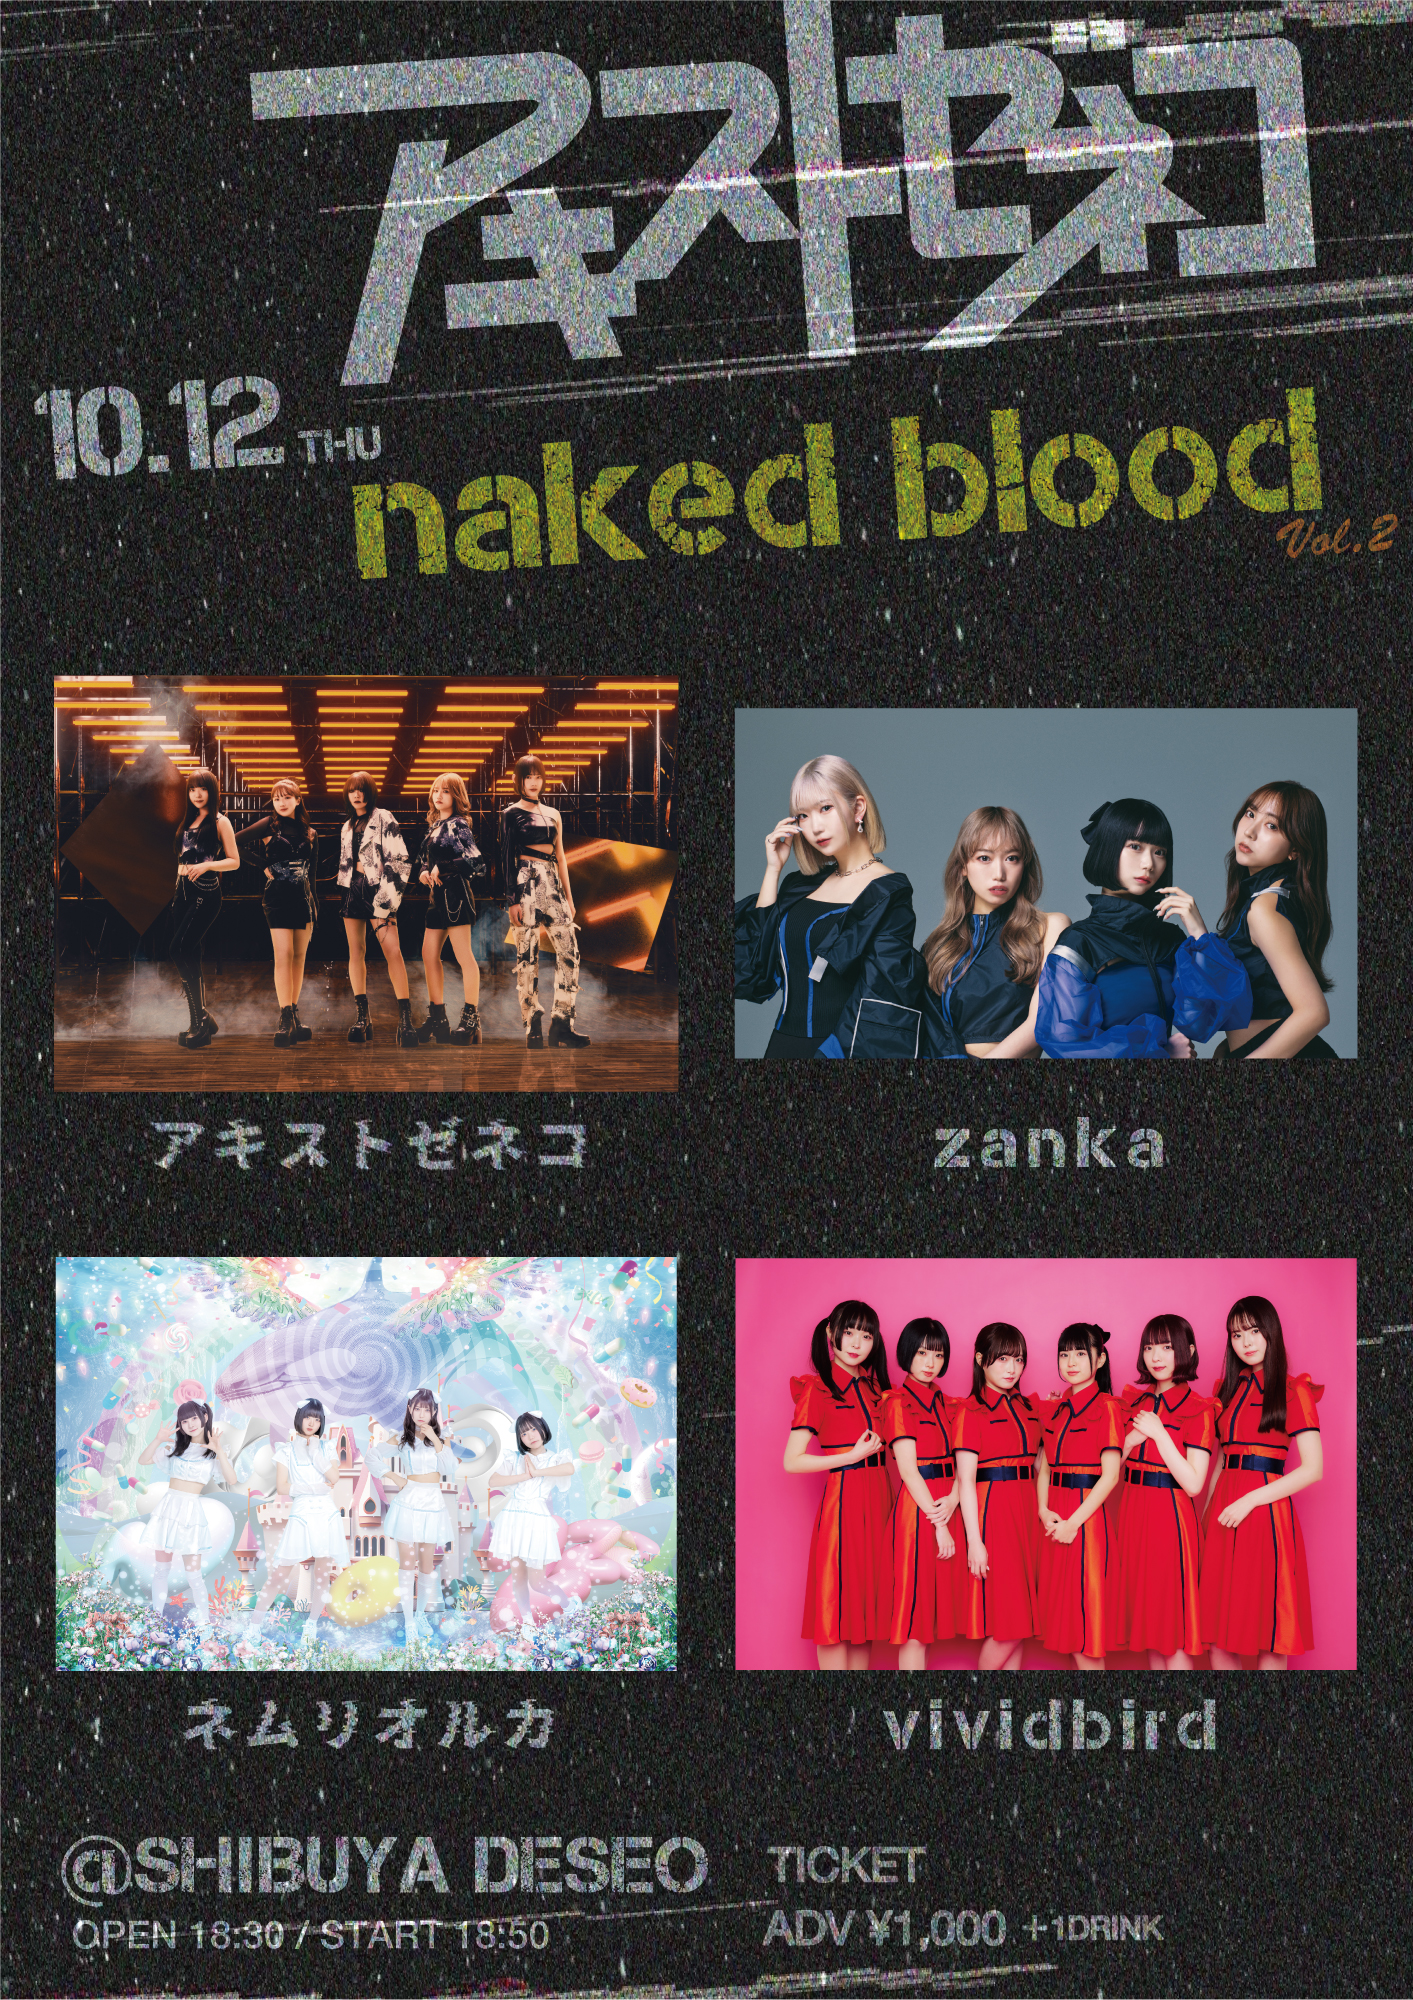 アキストゼネコ主催ライブ 「naked blood vol.2」 